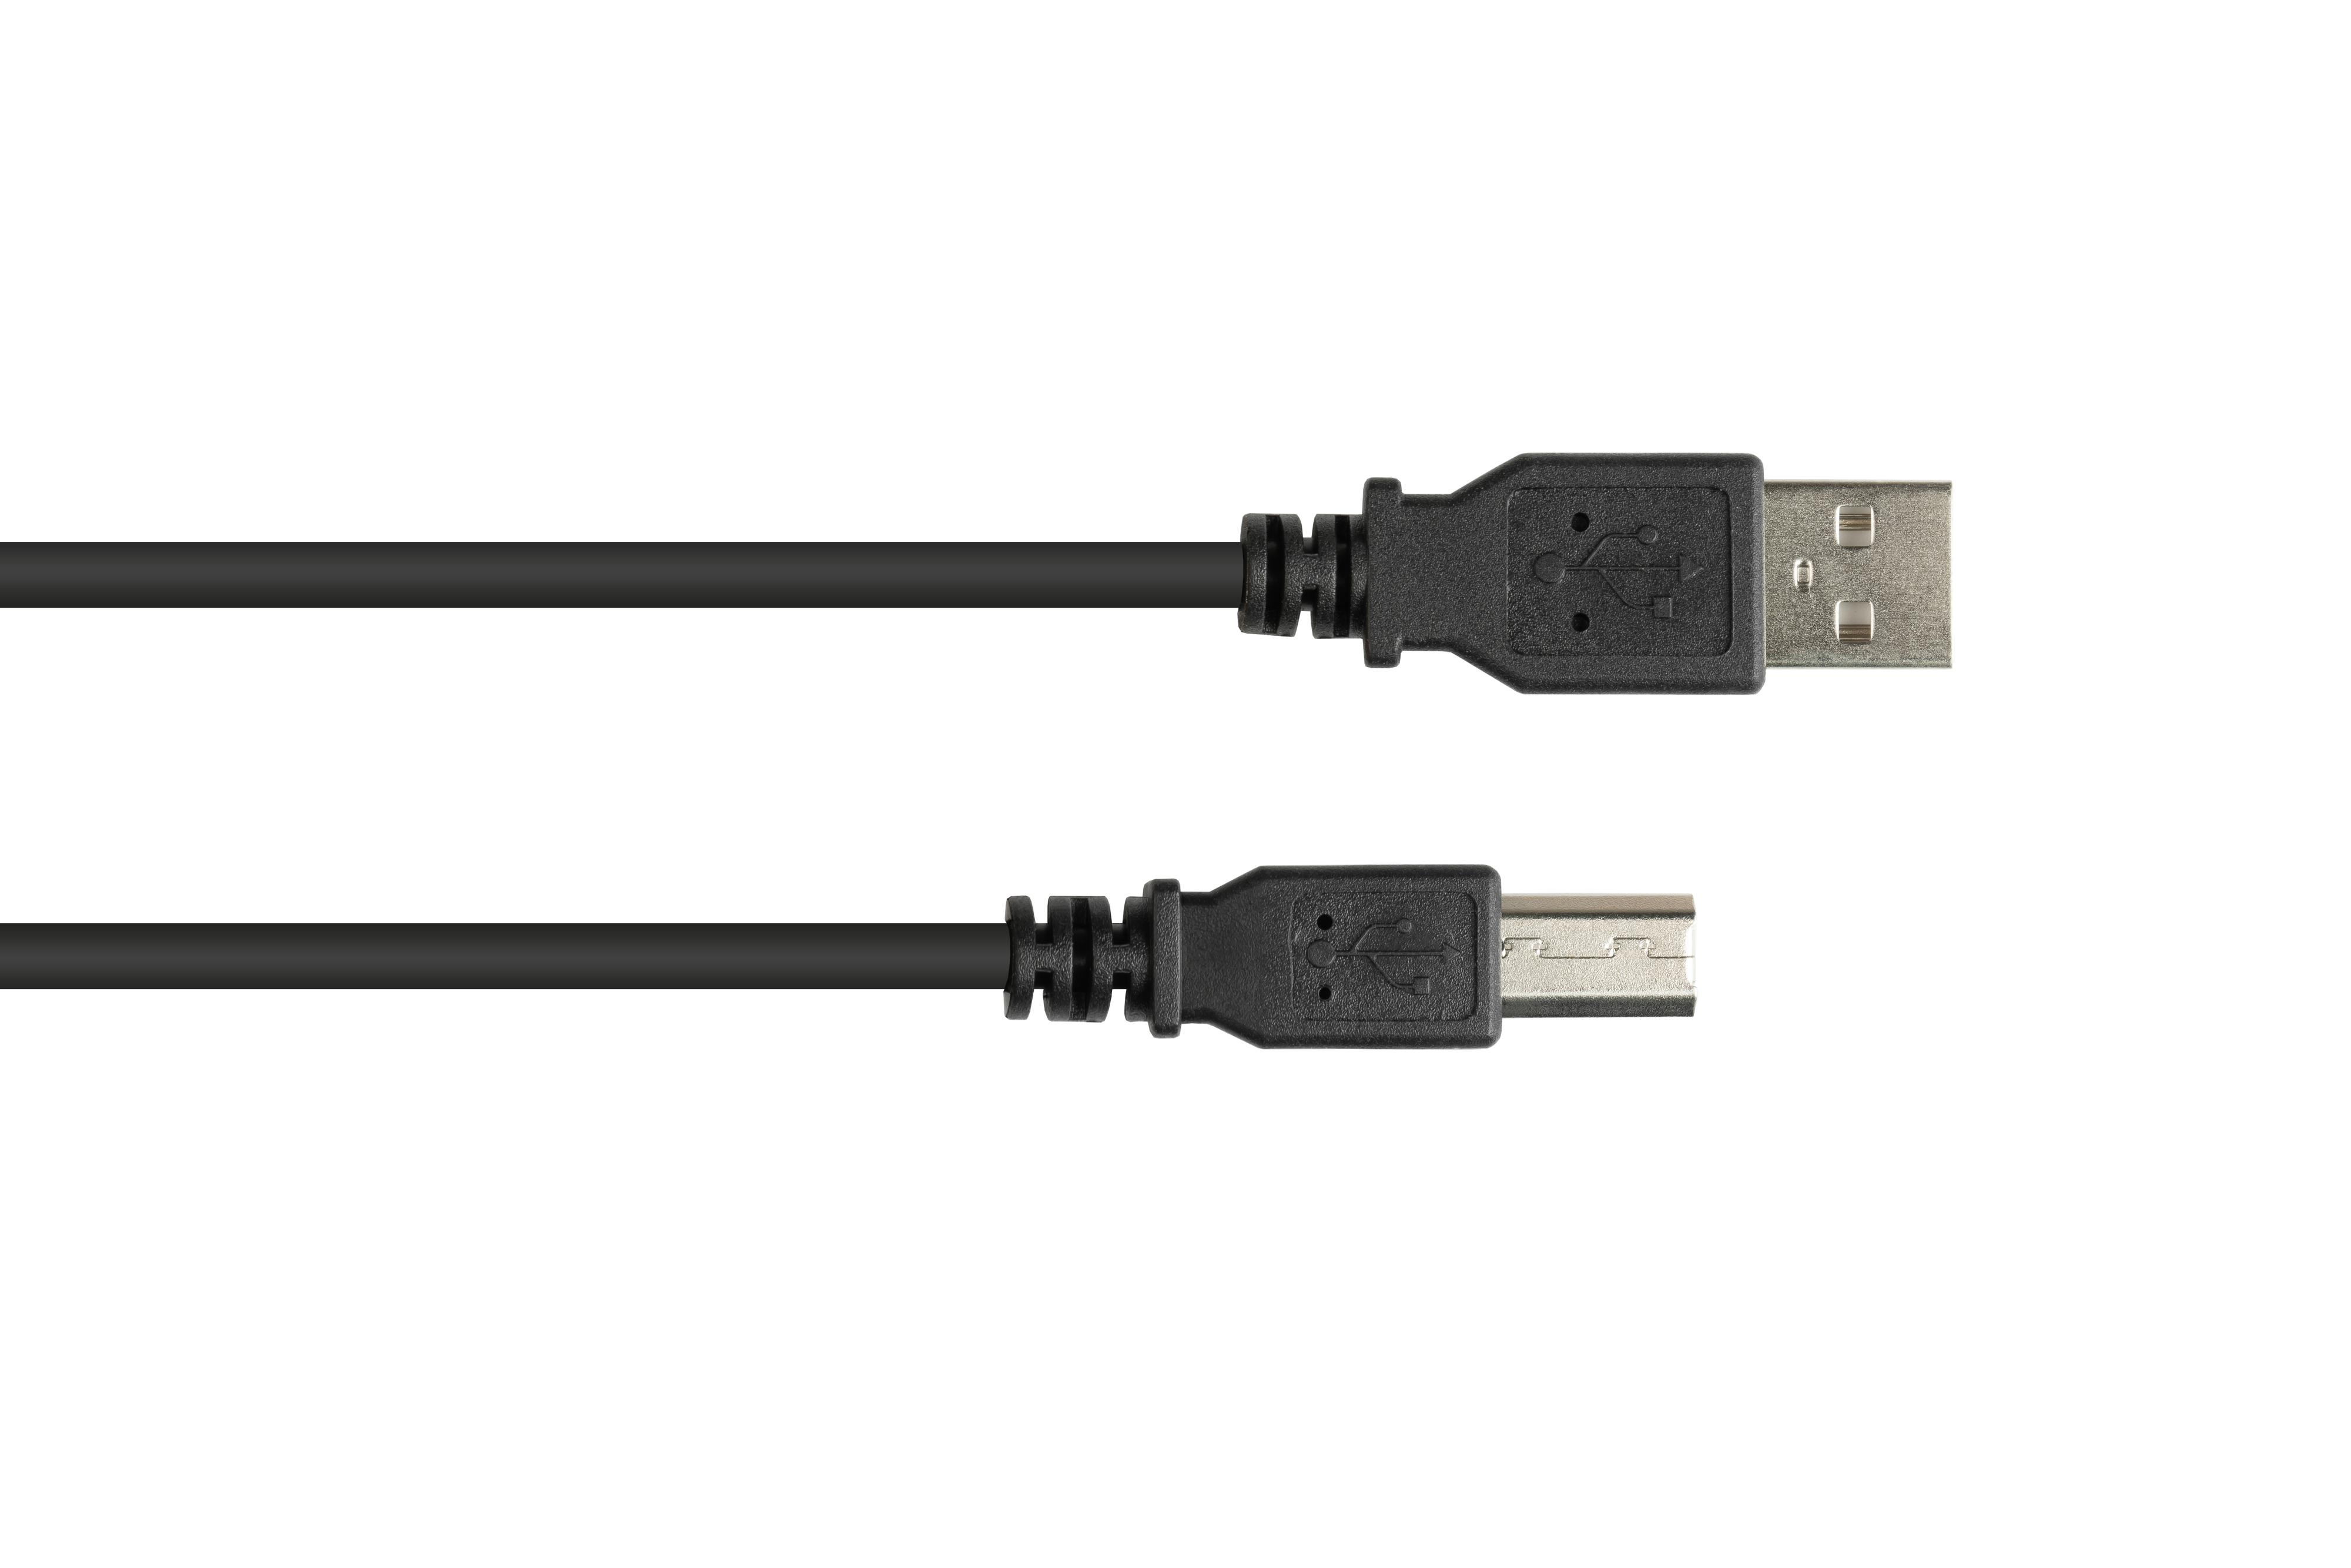 A Stecker schwarz Anschlusskabel B, 2.0 Stecker USB CONNECTIONS an GOOD